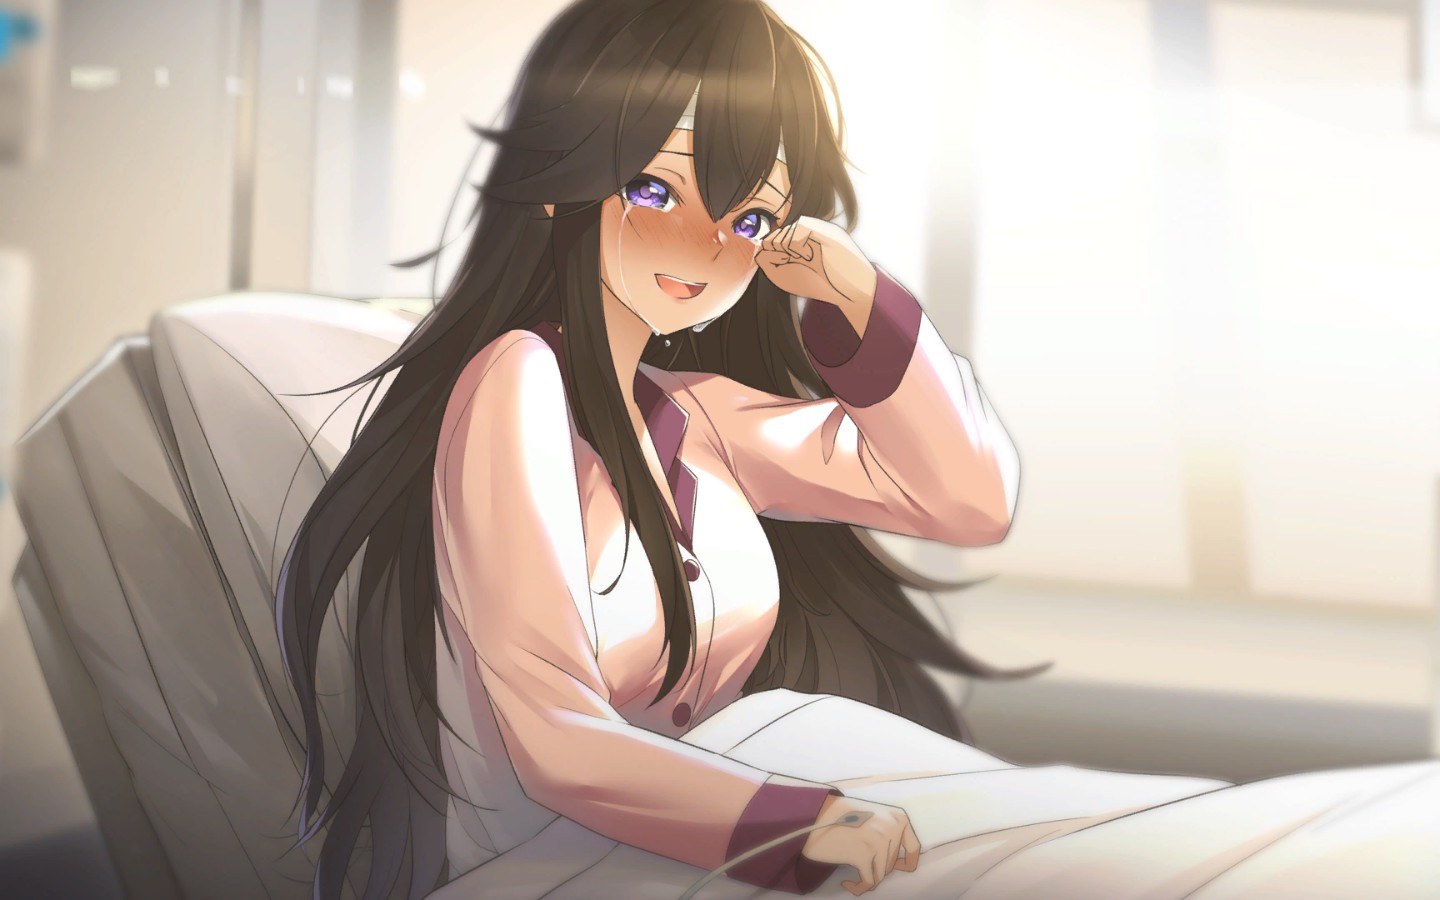 Anime Sad Girl Crying Wallpaper Download  MobCup